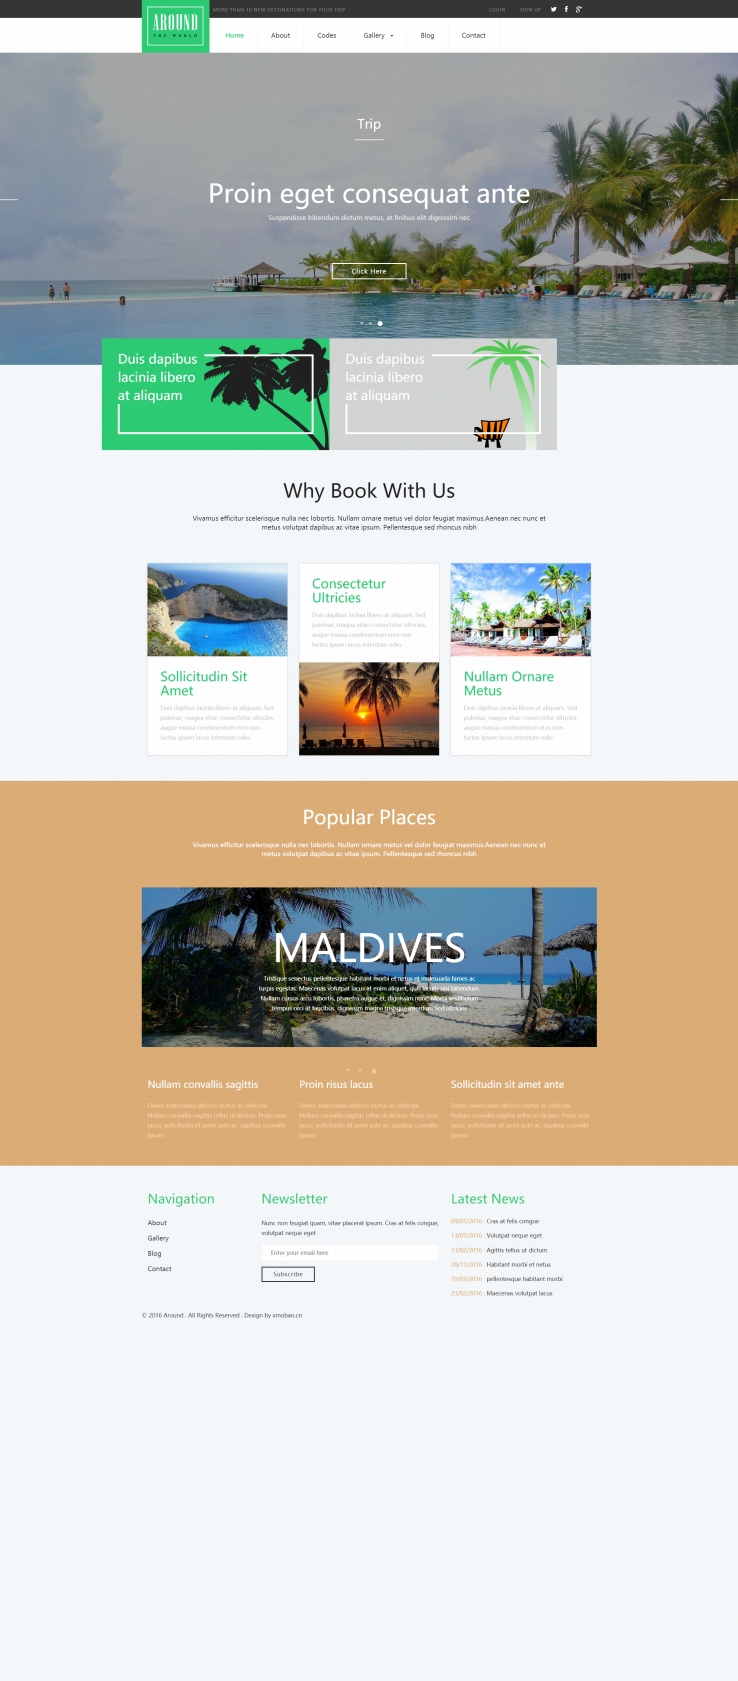 绿色欧美风格的旅游服务企业网站源码下载